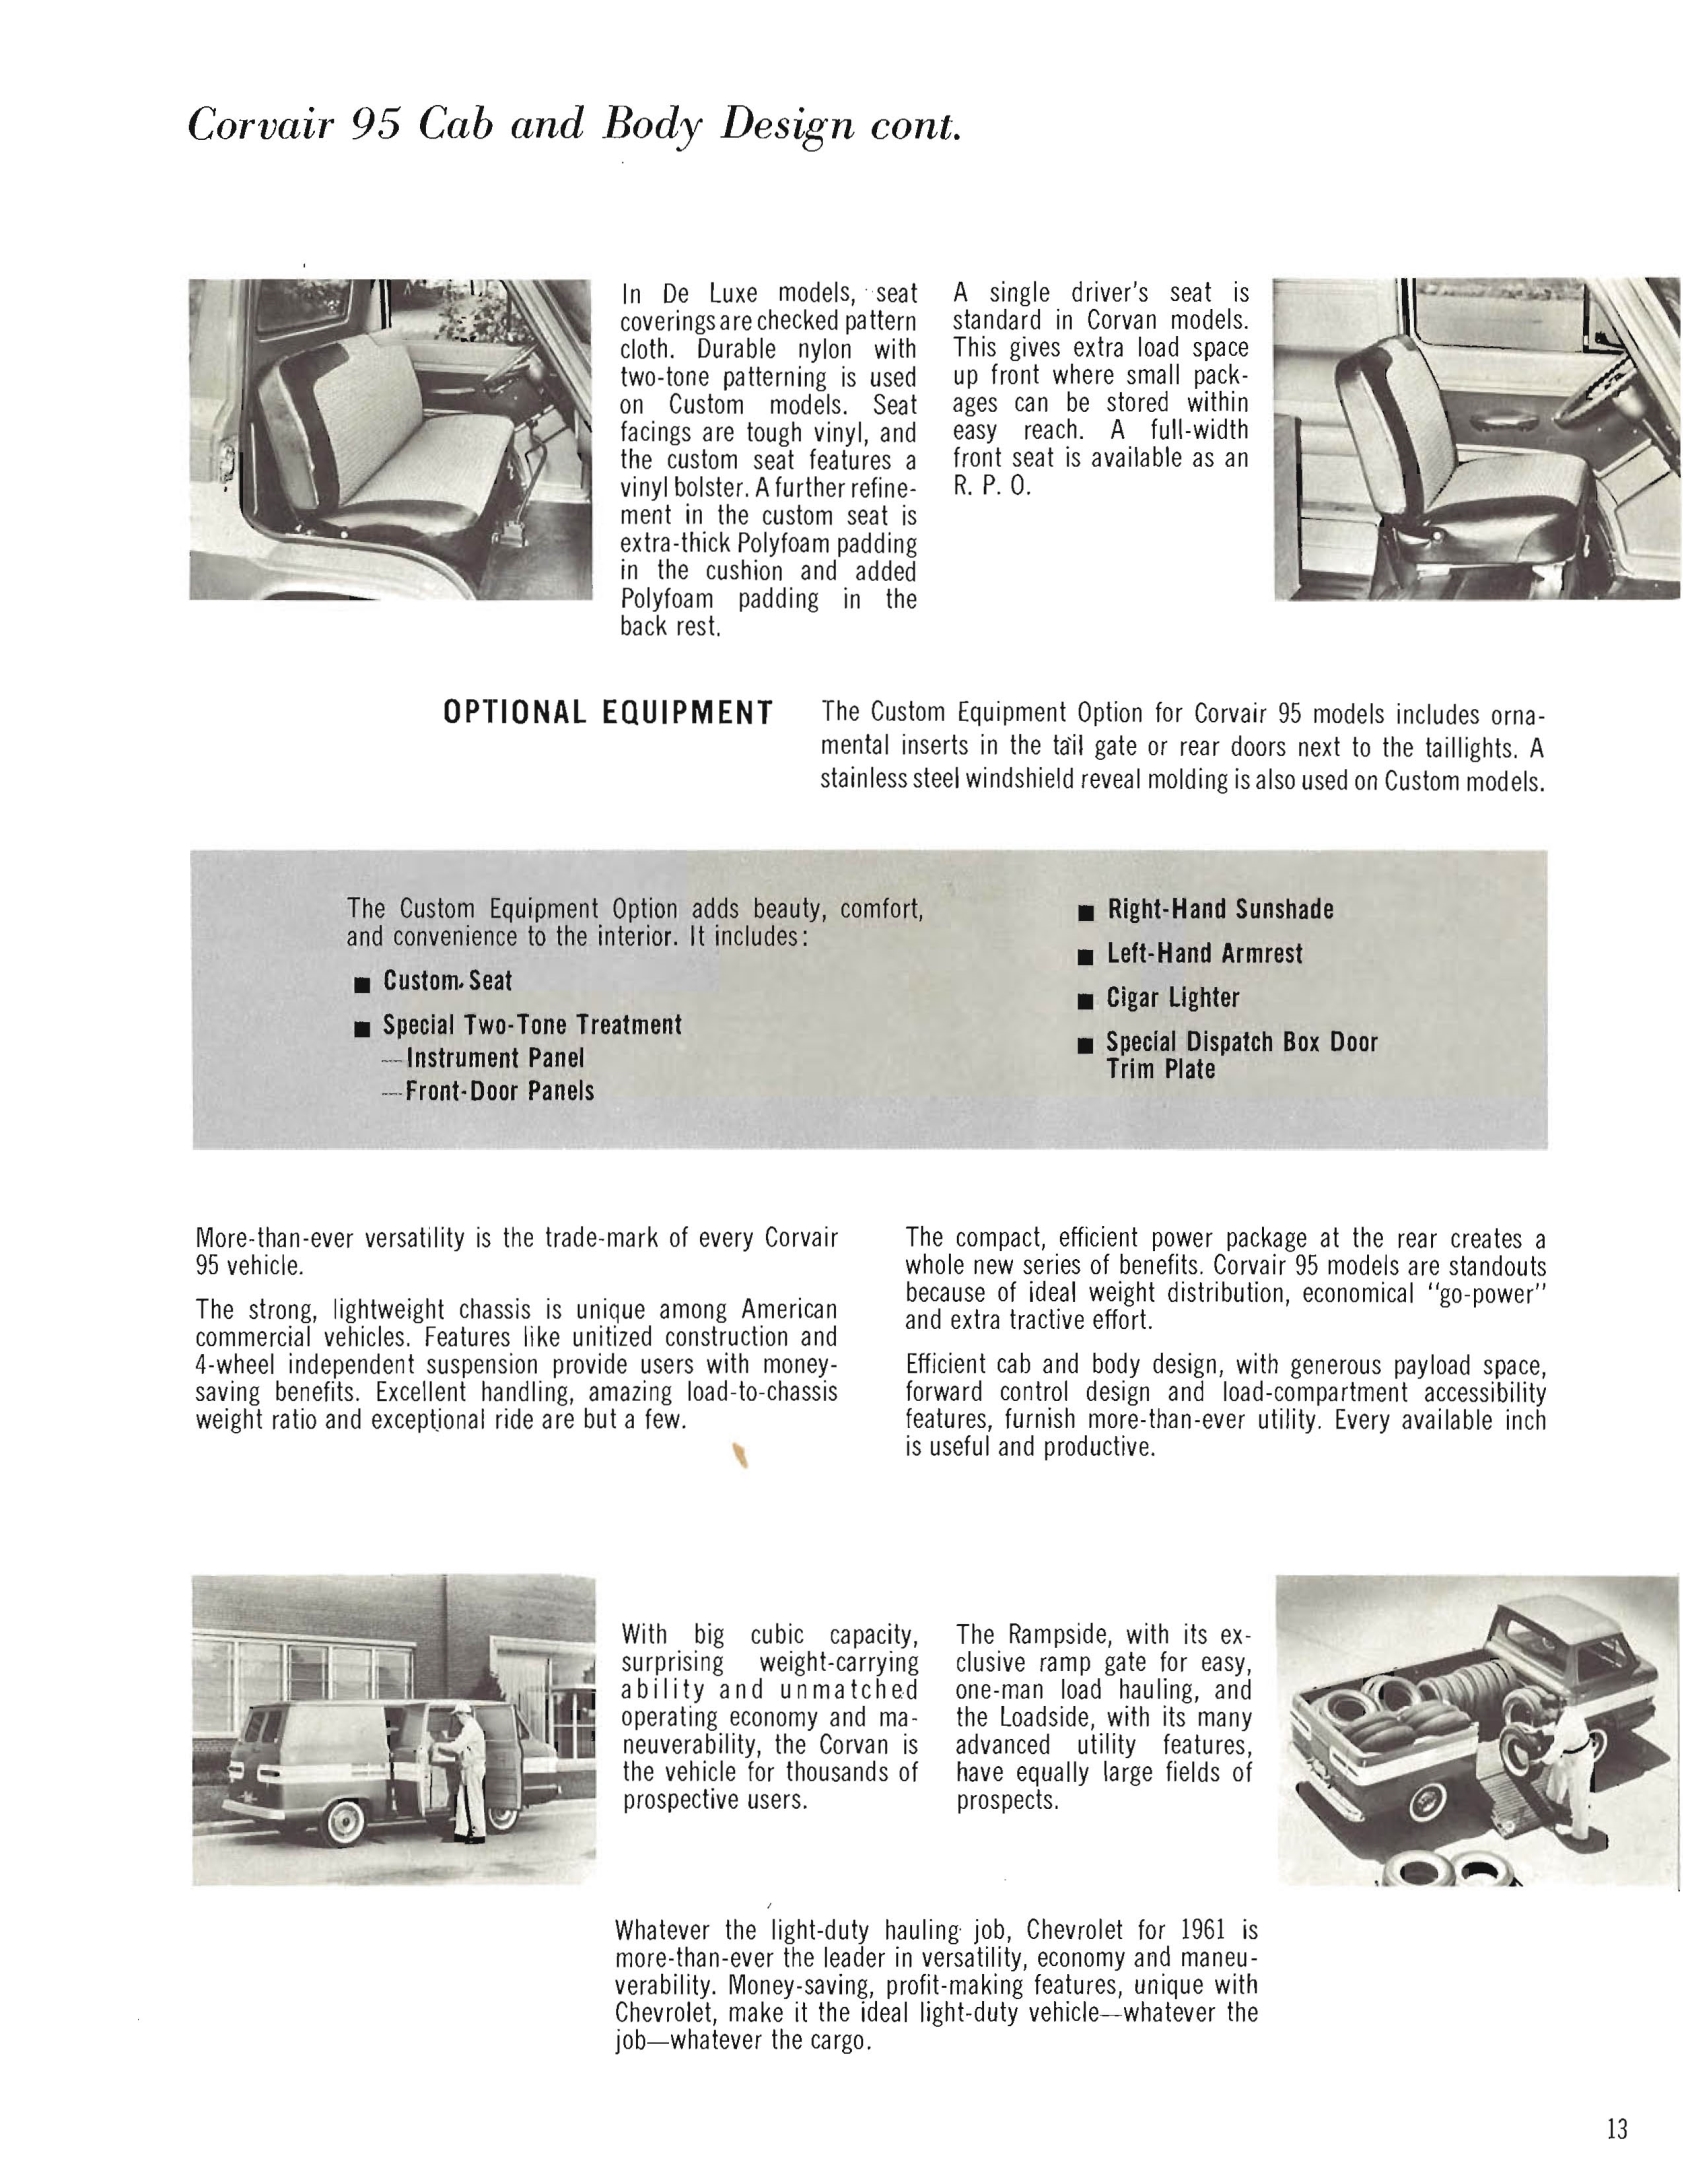 1961_Chevrolet_Trucks_Booklet-13